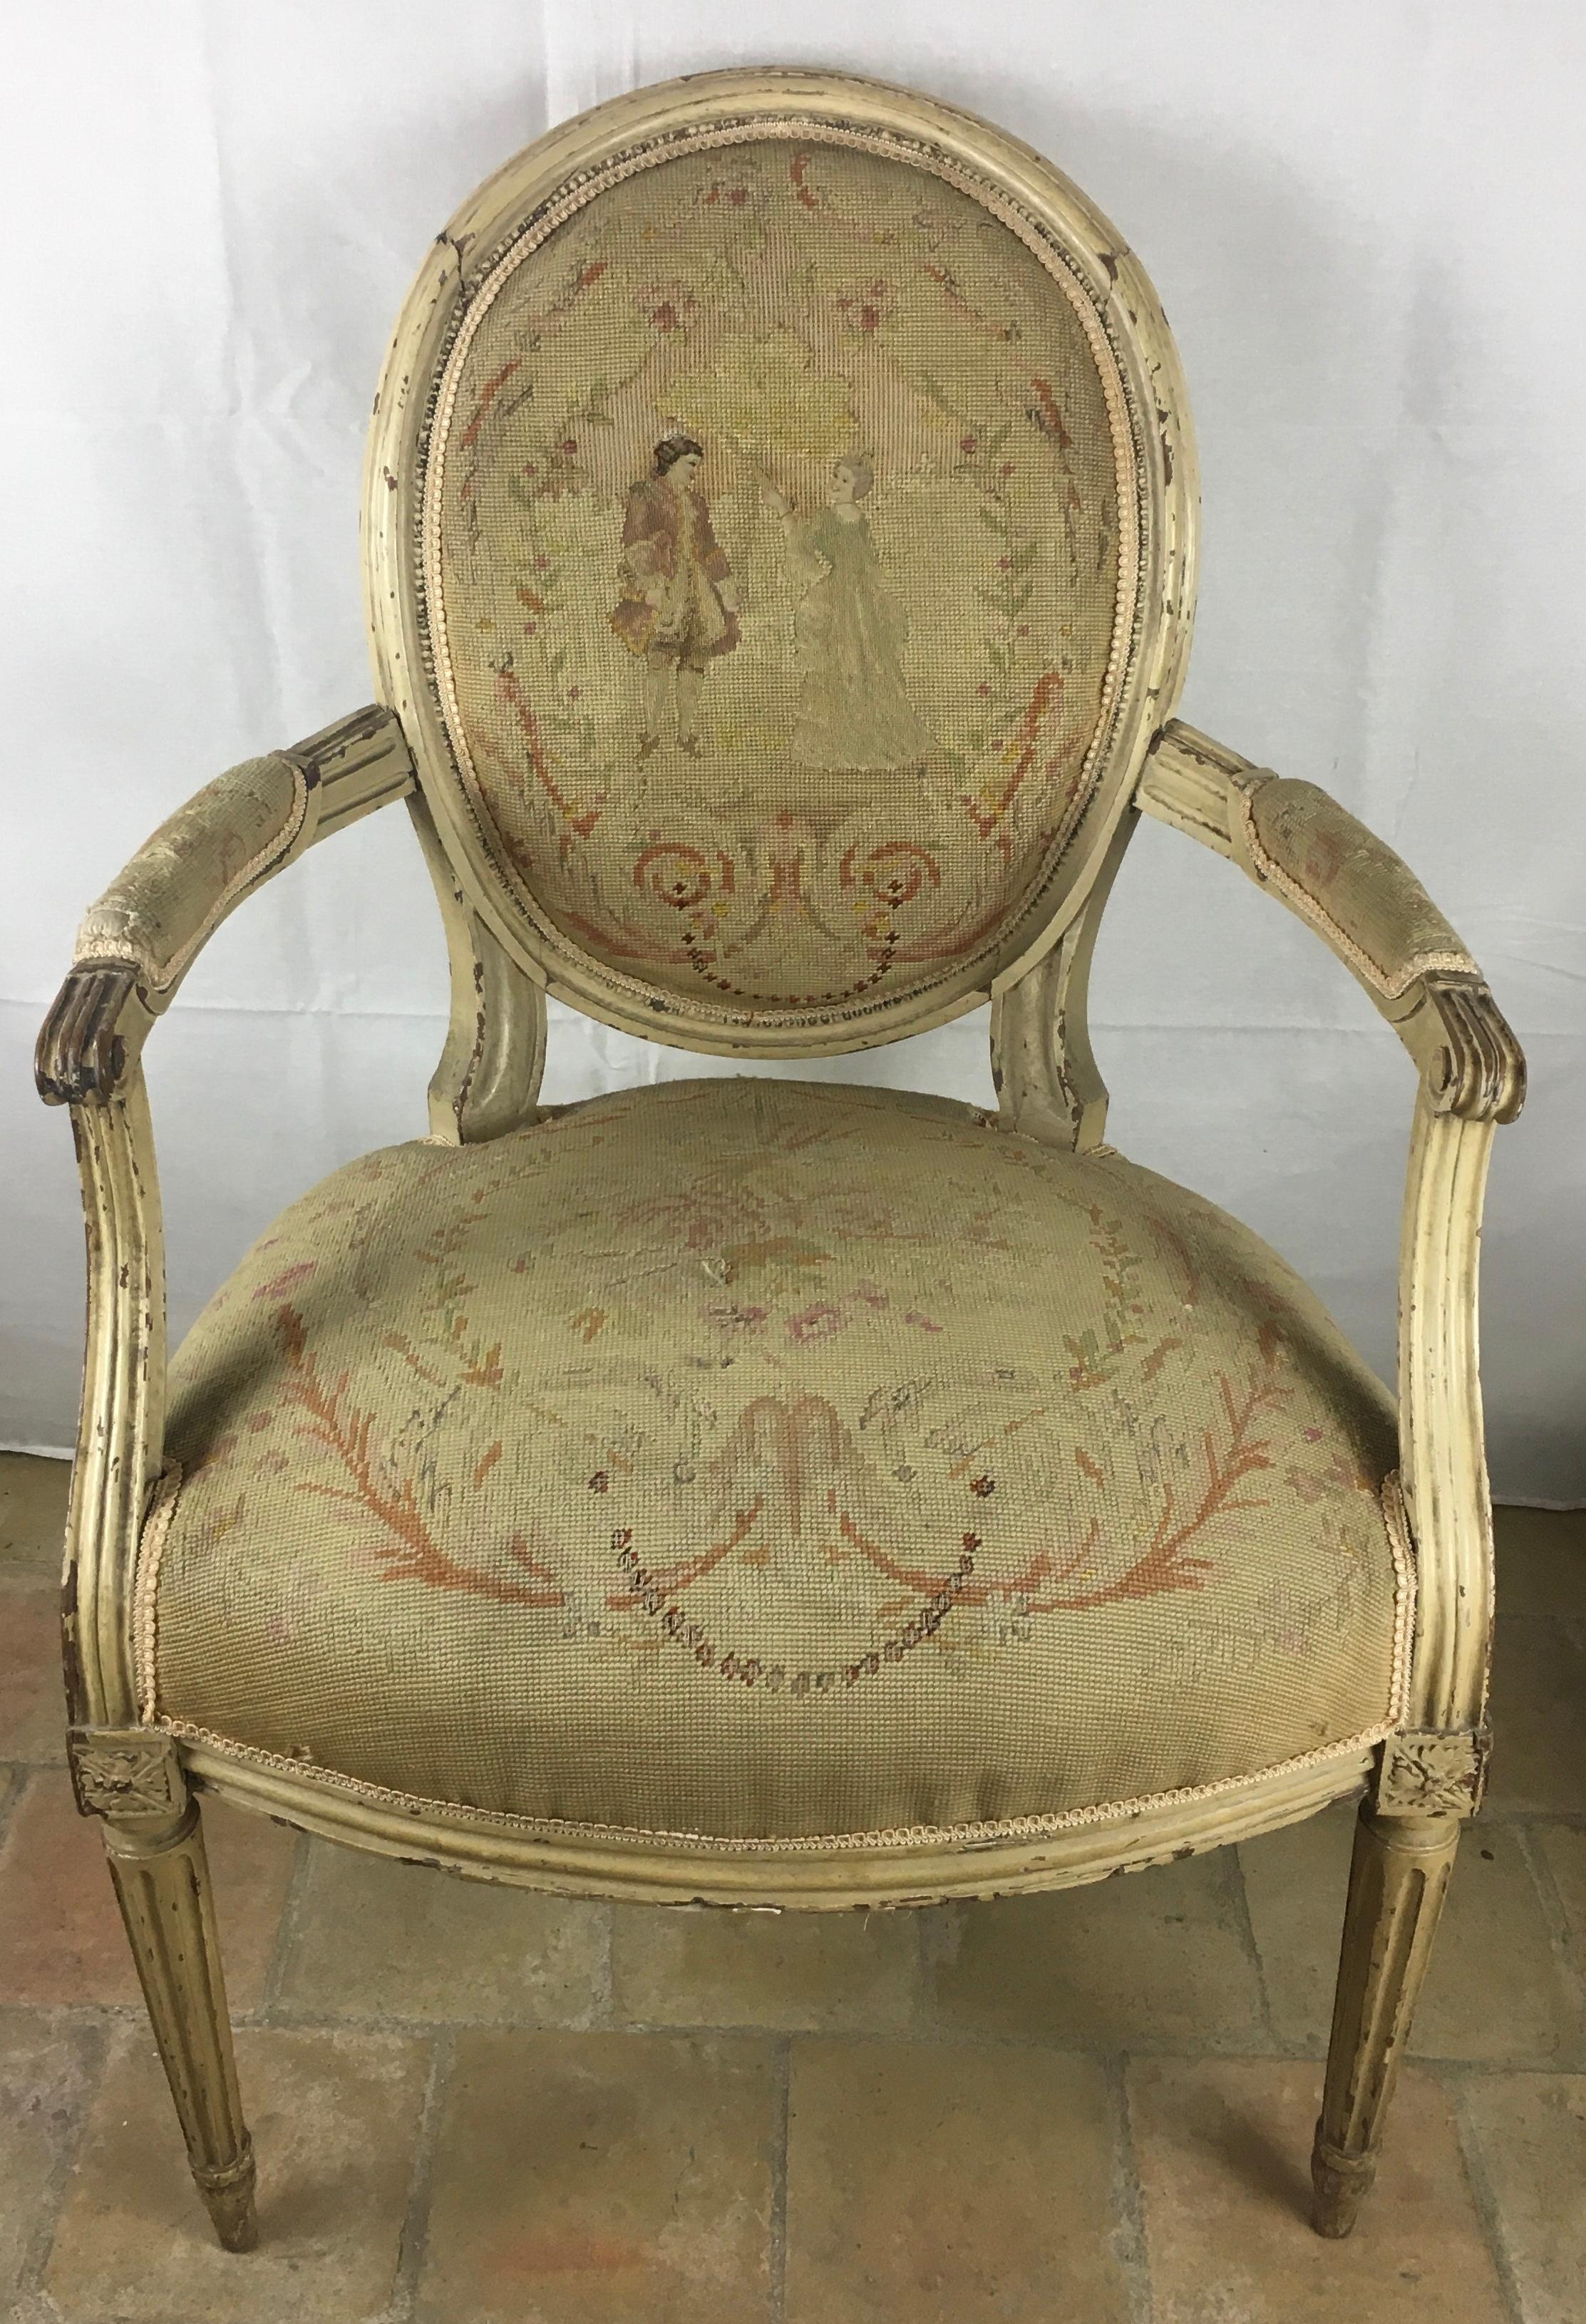 Sehr schönes Paar französischer Louis-XVI-Sessel aus dem 18. Jahrhundert, mit verschnörkelten Armlehnen, über einem Sitz mit Bogenfront, stehend auf  geriffelte Beine. Der Wagen ist größtenteils in der Originalfarbe gehalten und mit handgefertigten